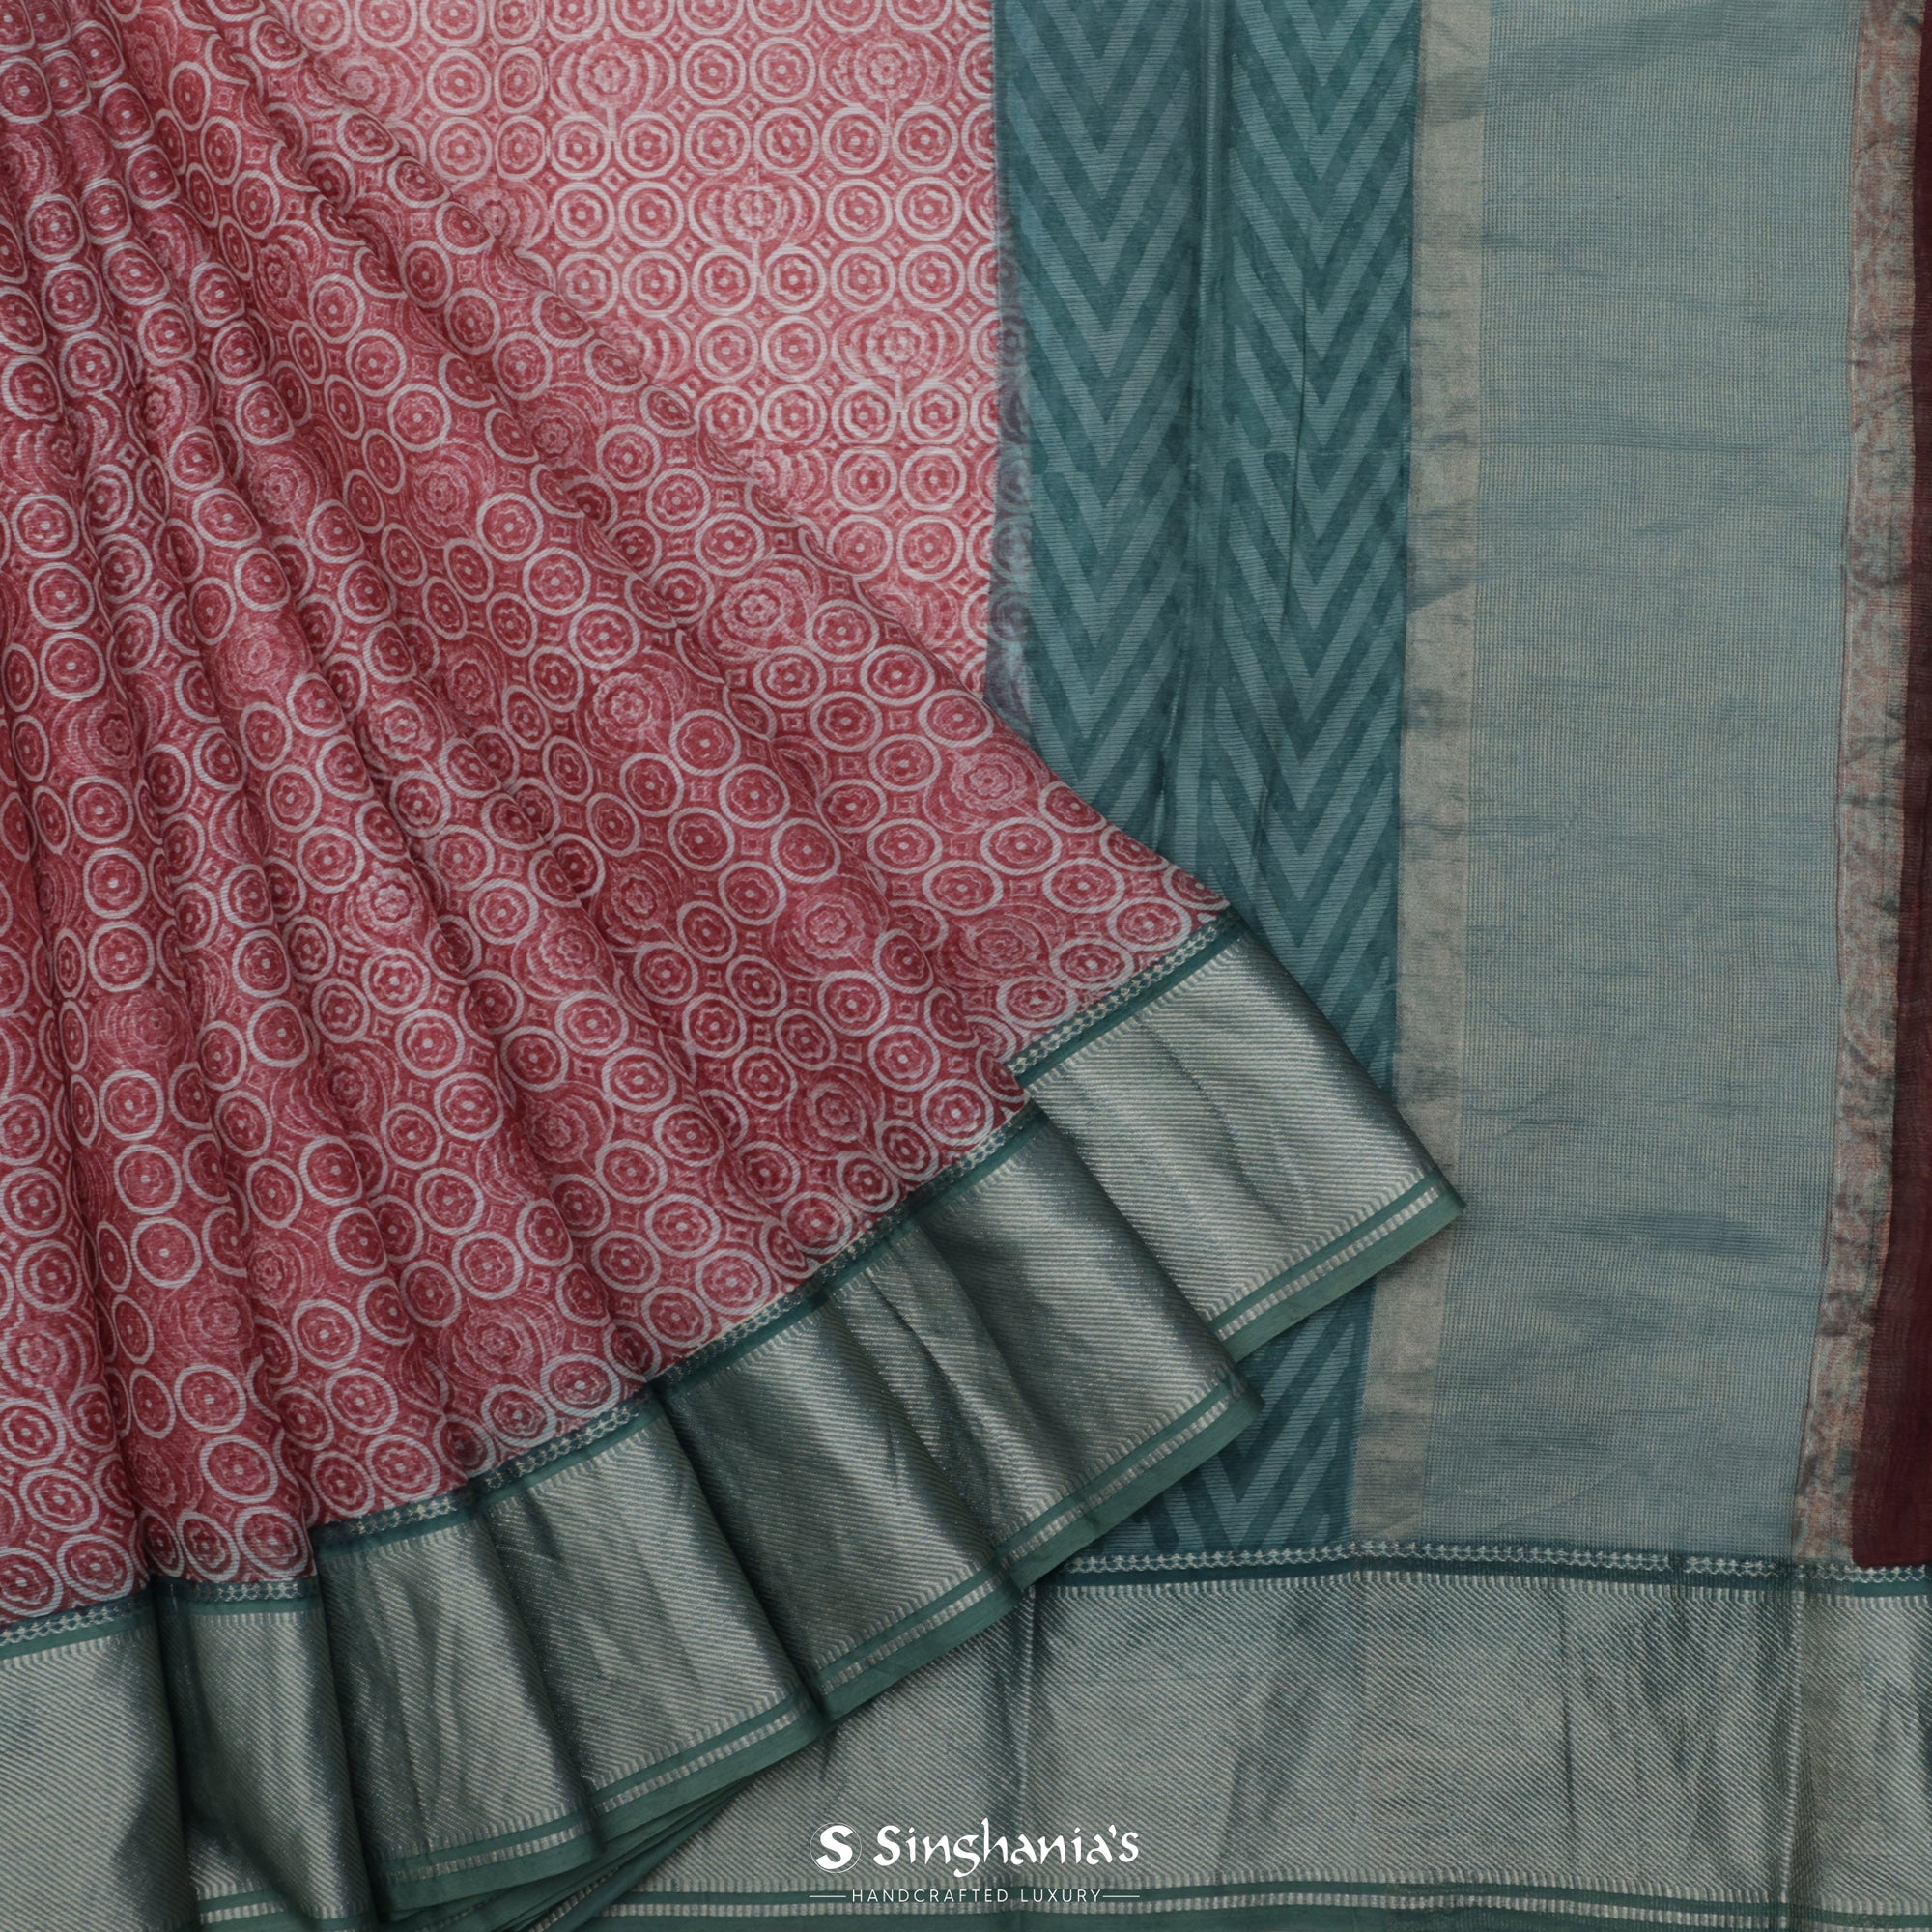 Rose Red Printed Maheshwari Silk Saree With Floral Motif Pattern